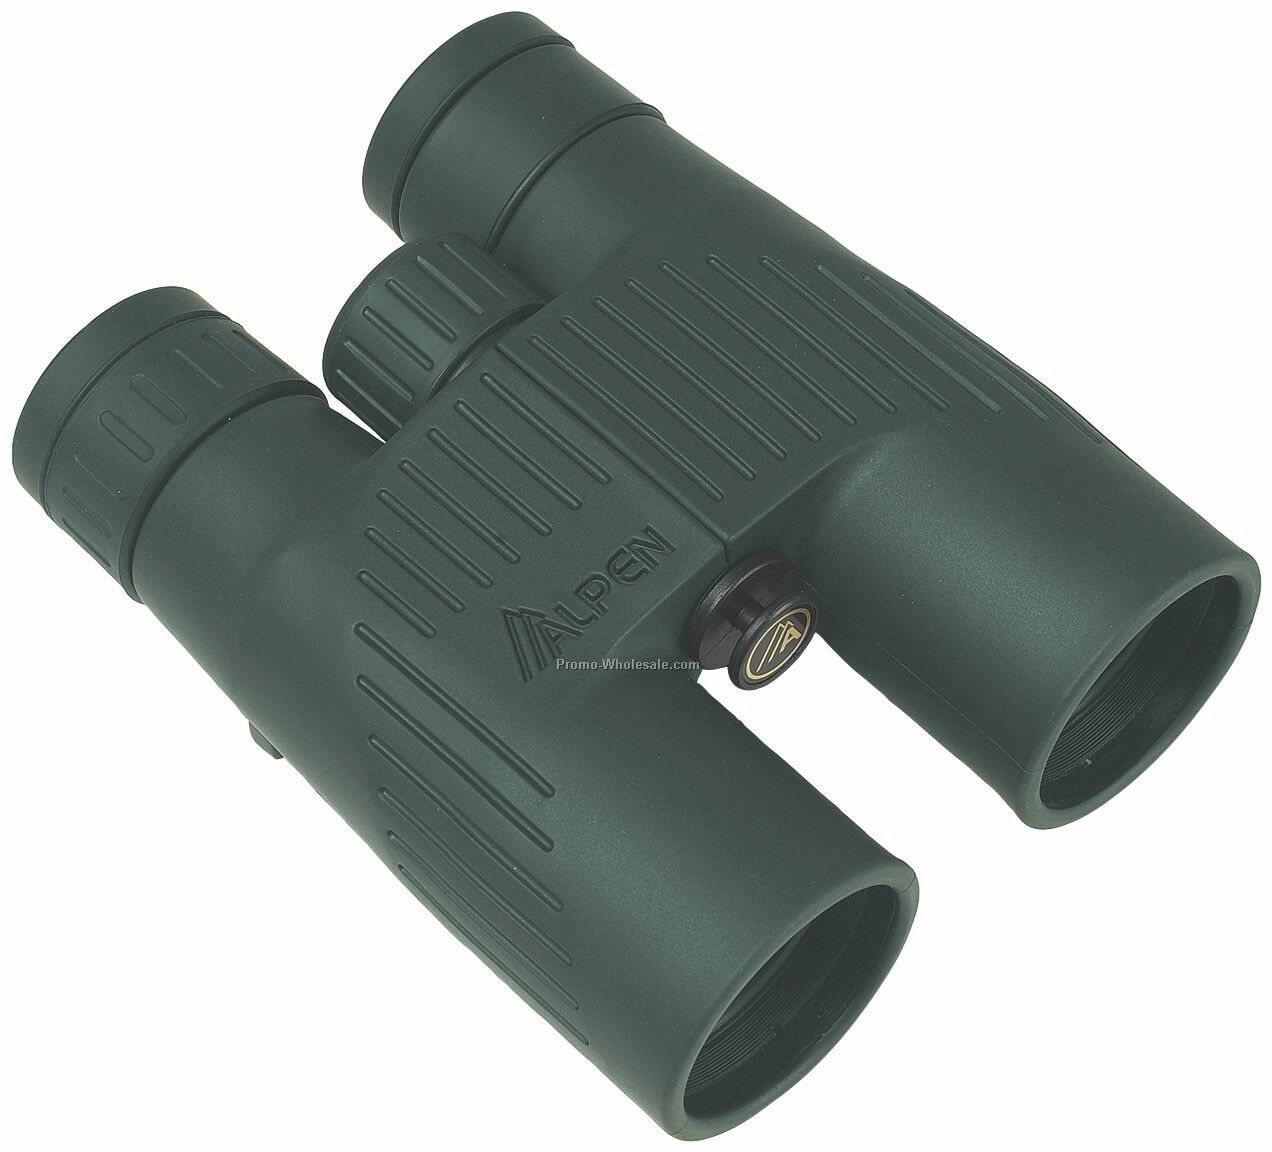 Alpen 10x42 Waterproof Fully Coated Binoculars